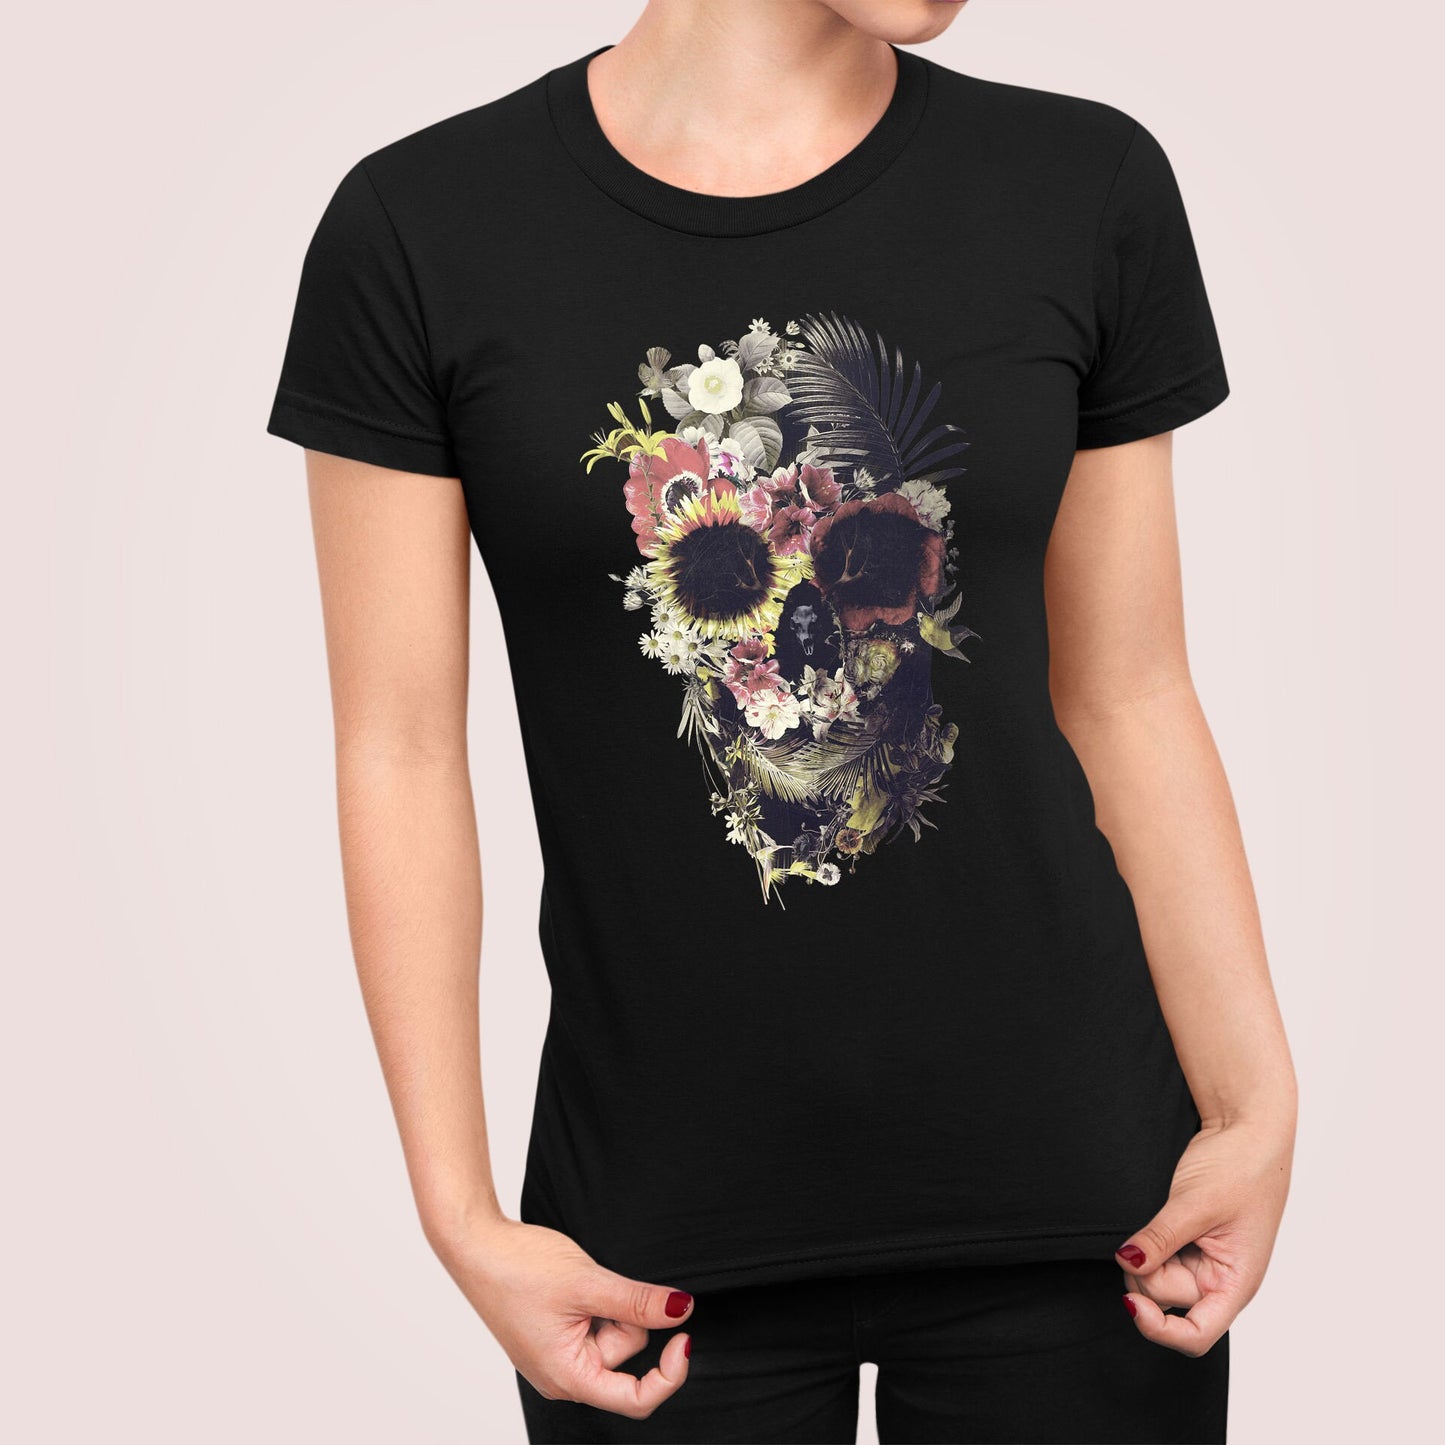 Floral Skull Print Womens T shirt, Sugar Skull Art Tshirt Gift For Her, Boho Skull Print Tshirt, Gothic Skull Bella Canvas Tshirt Gift